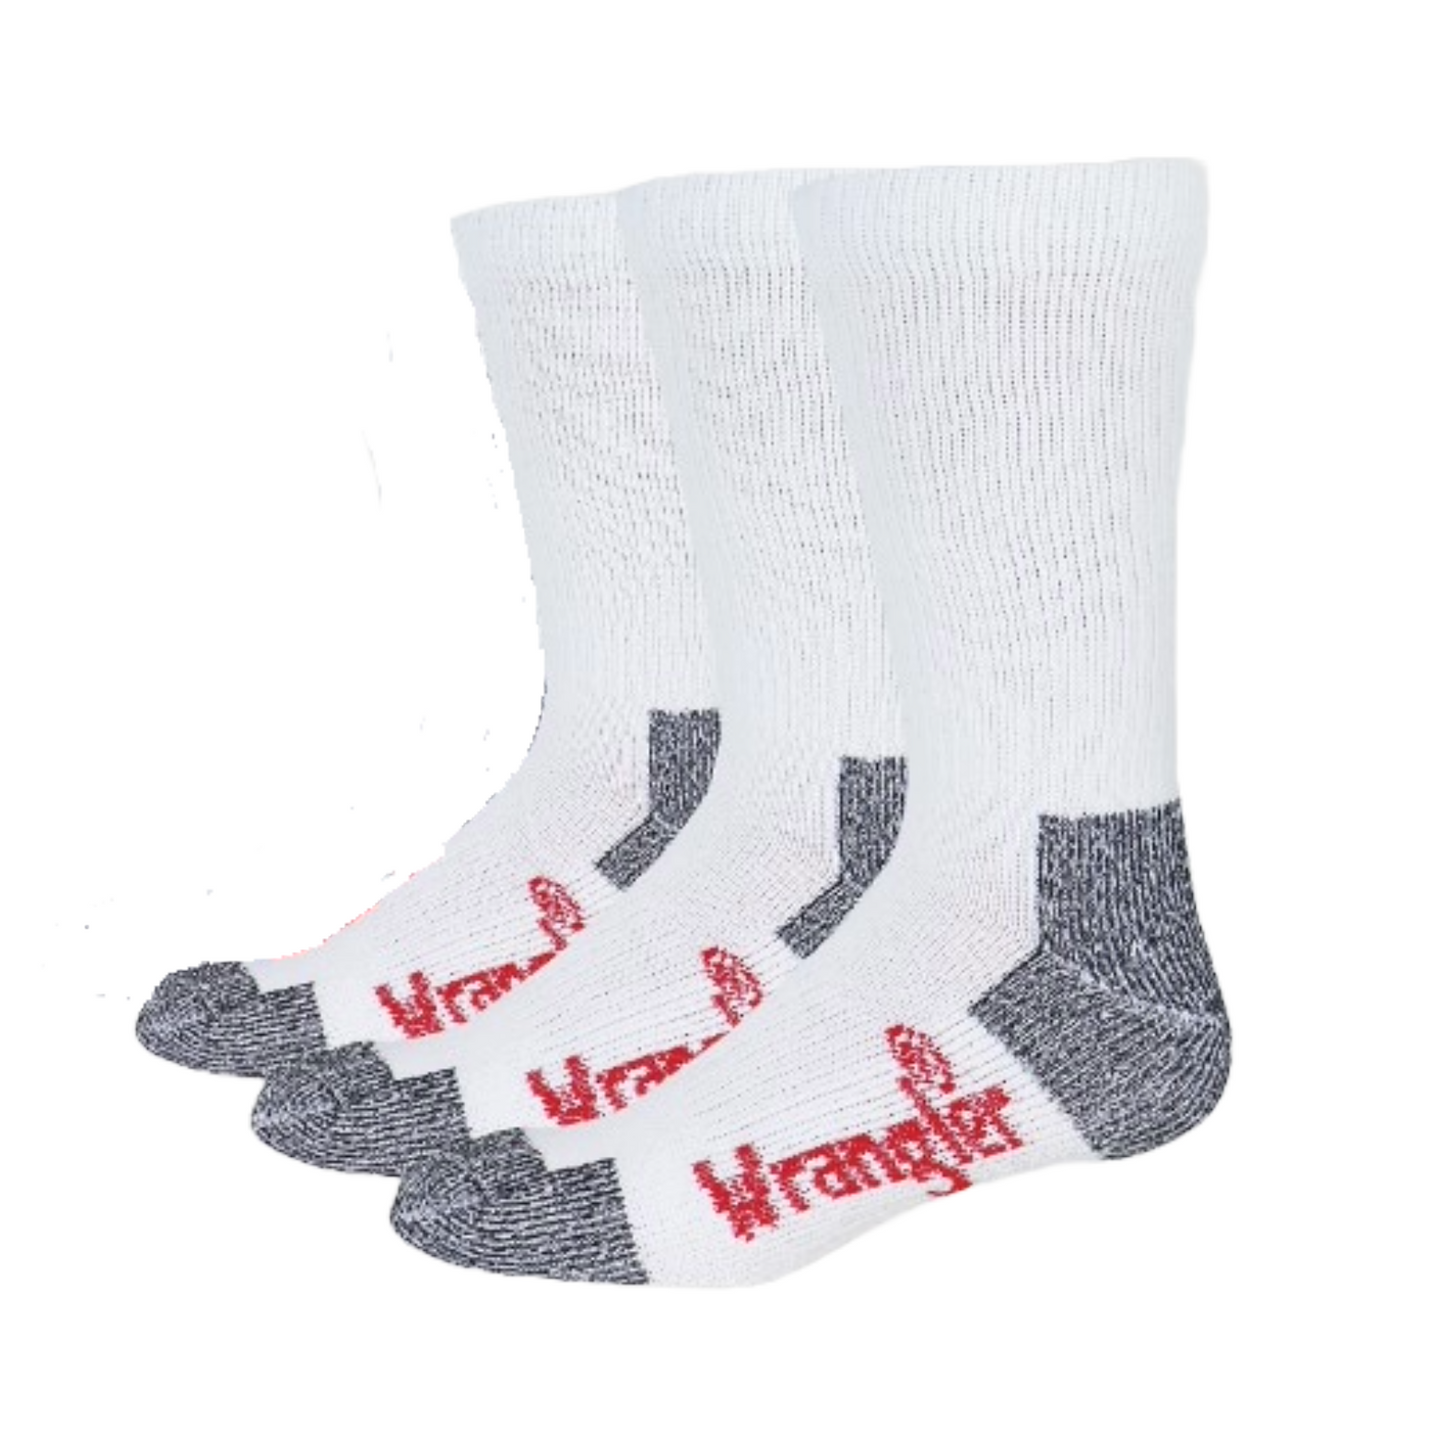 Wrangler® Riggs Men's White Ultra-Dri Work Boot Socks - 3 Pack - 3/72435-1000